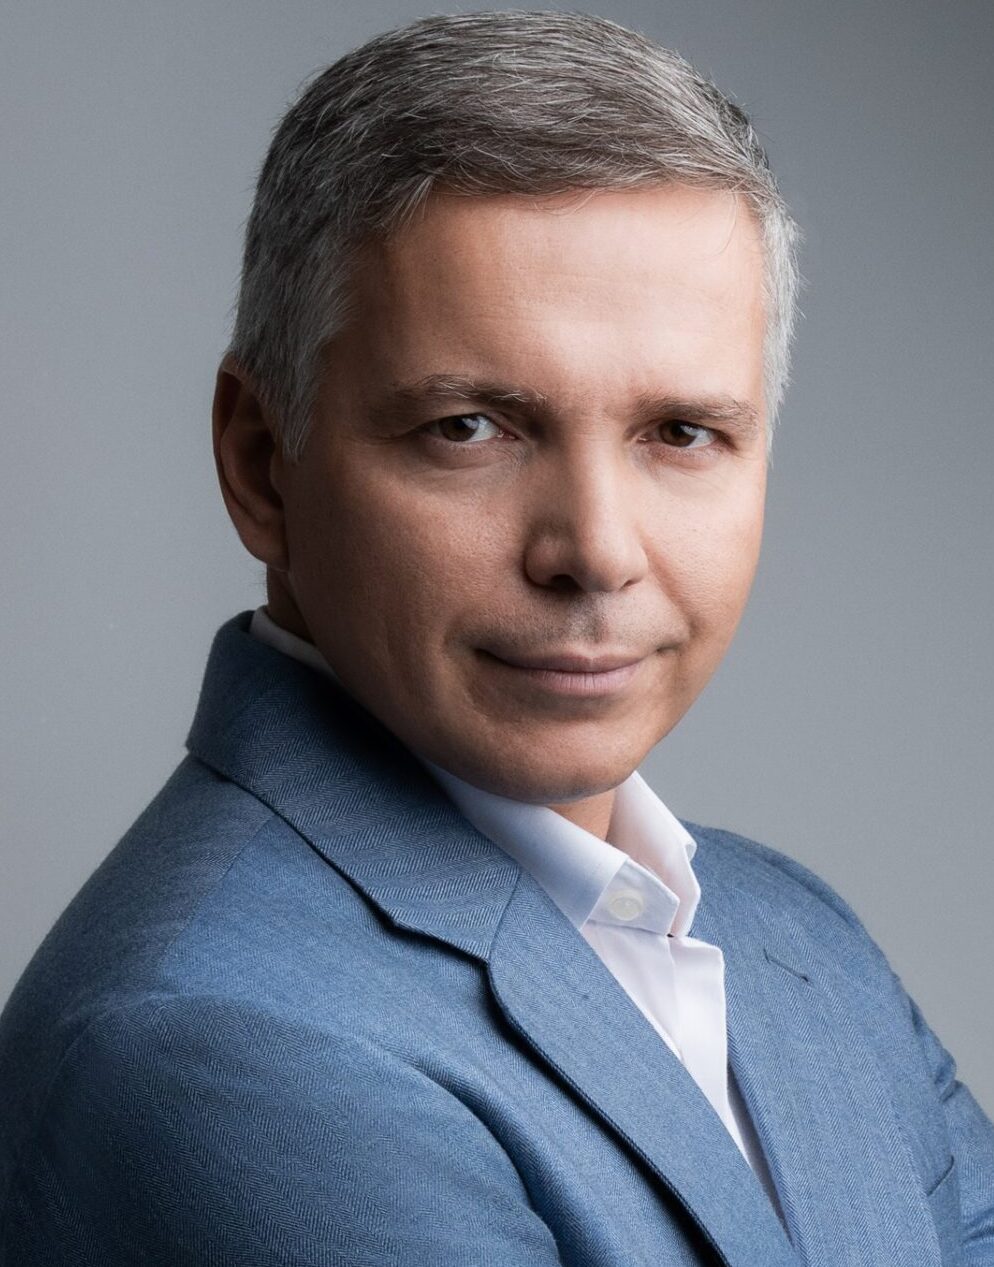 Alexey Gubarev